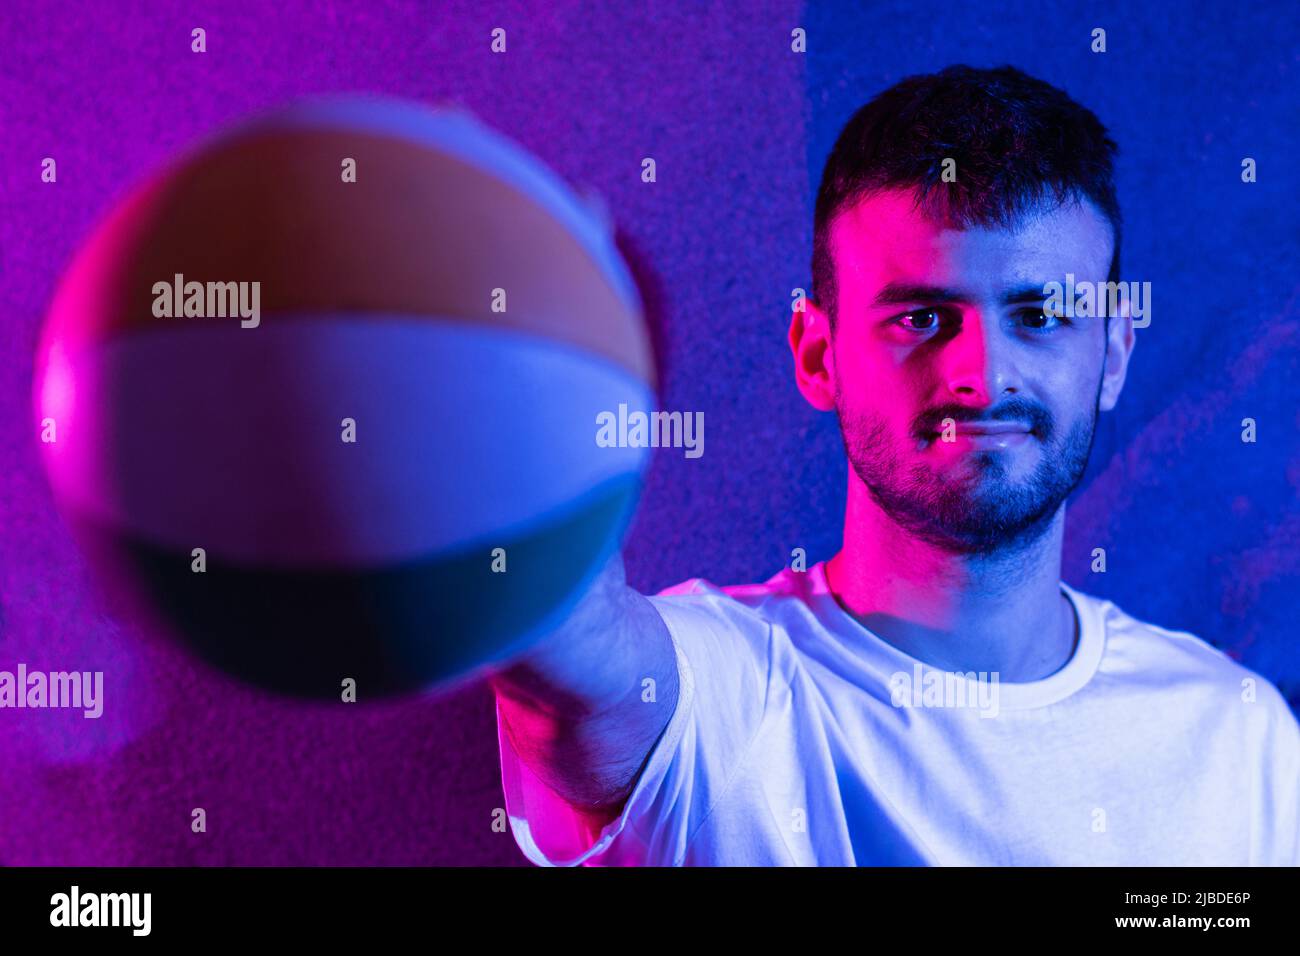 Ein junger kaukasischer bärtiger Mann mit ausgestrecktem Arm, der einen kleinen Basketball in verschiedenen Farben hält. Der Ball ist im Vordergrund nicht fokussiert und das p Stockfoto